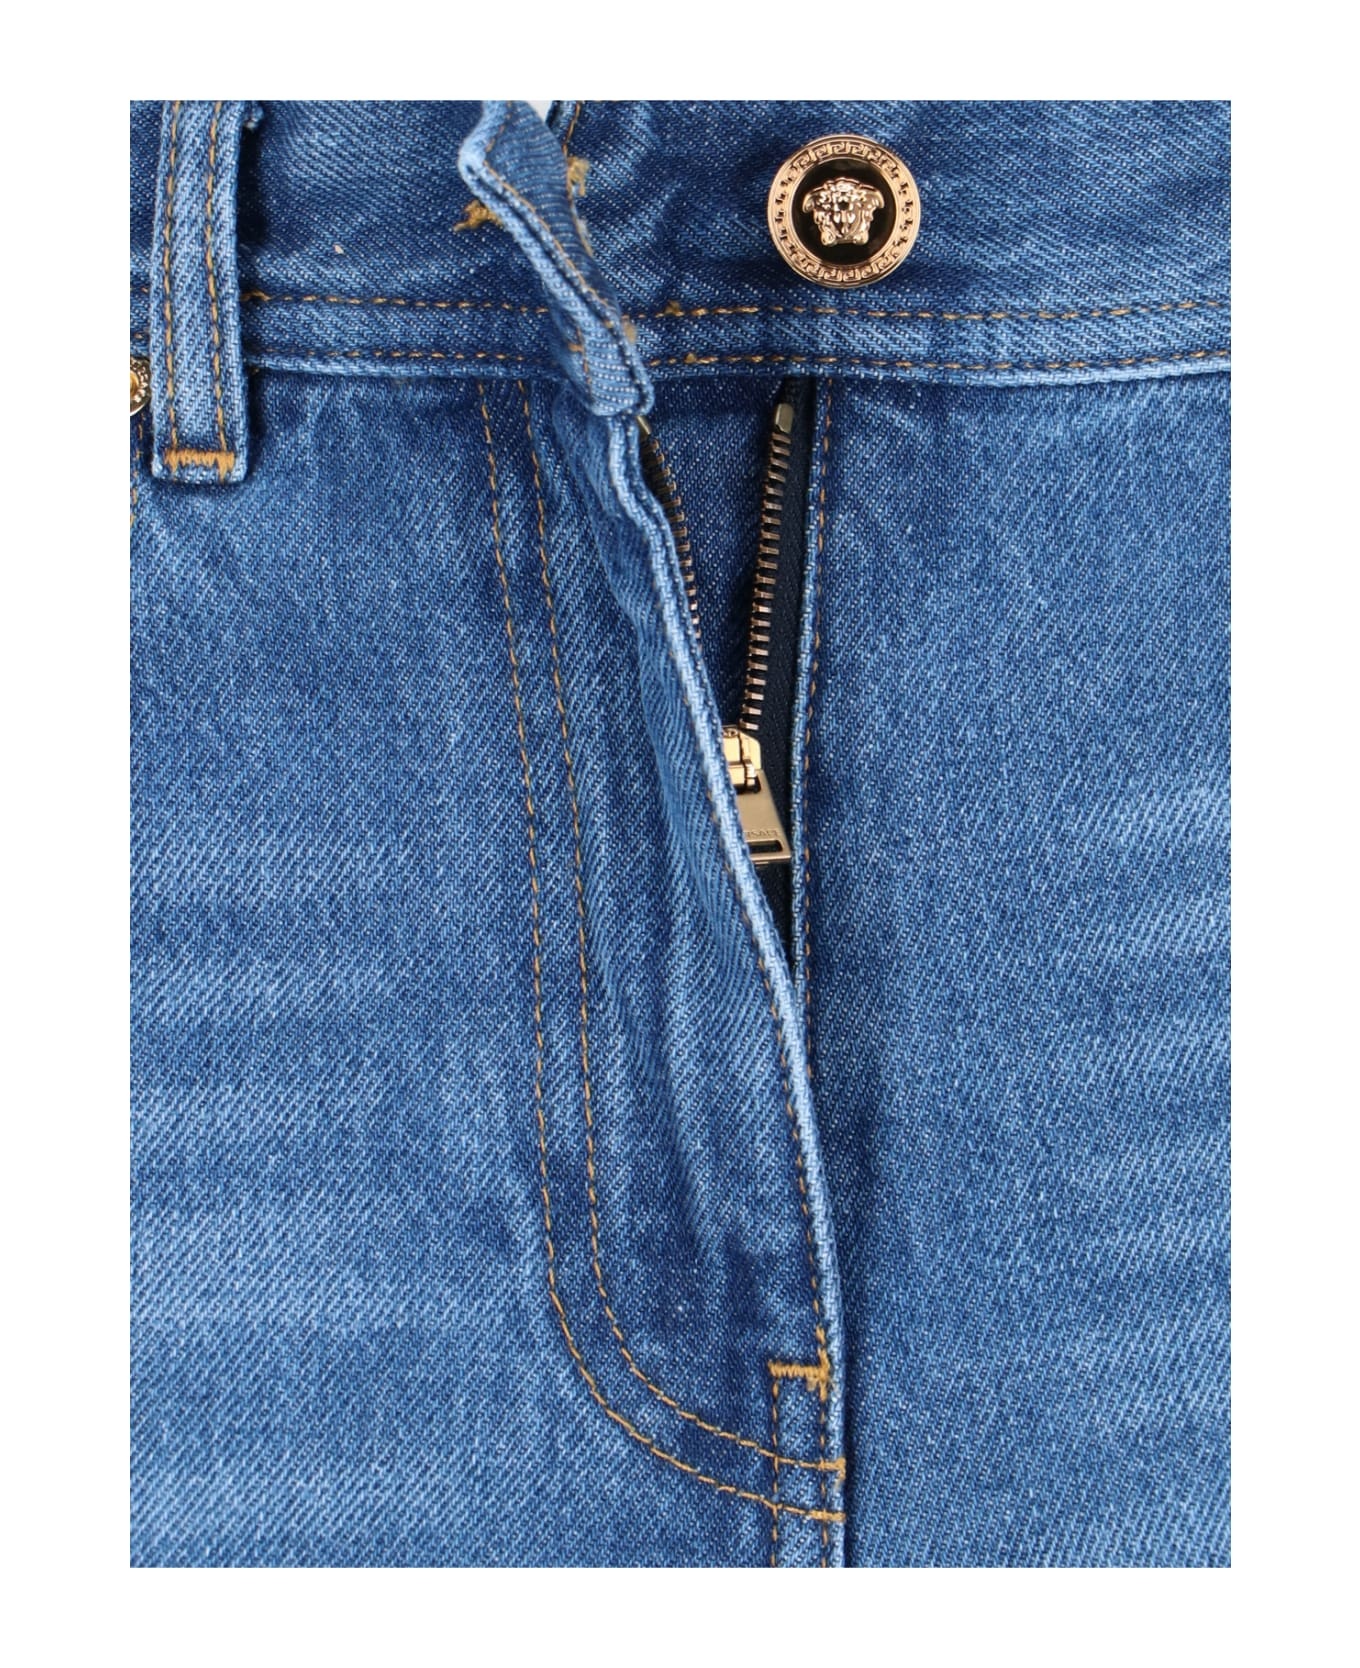 Blue Cotton Jeans - 5